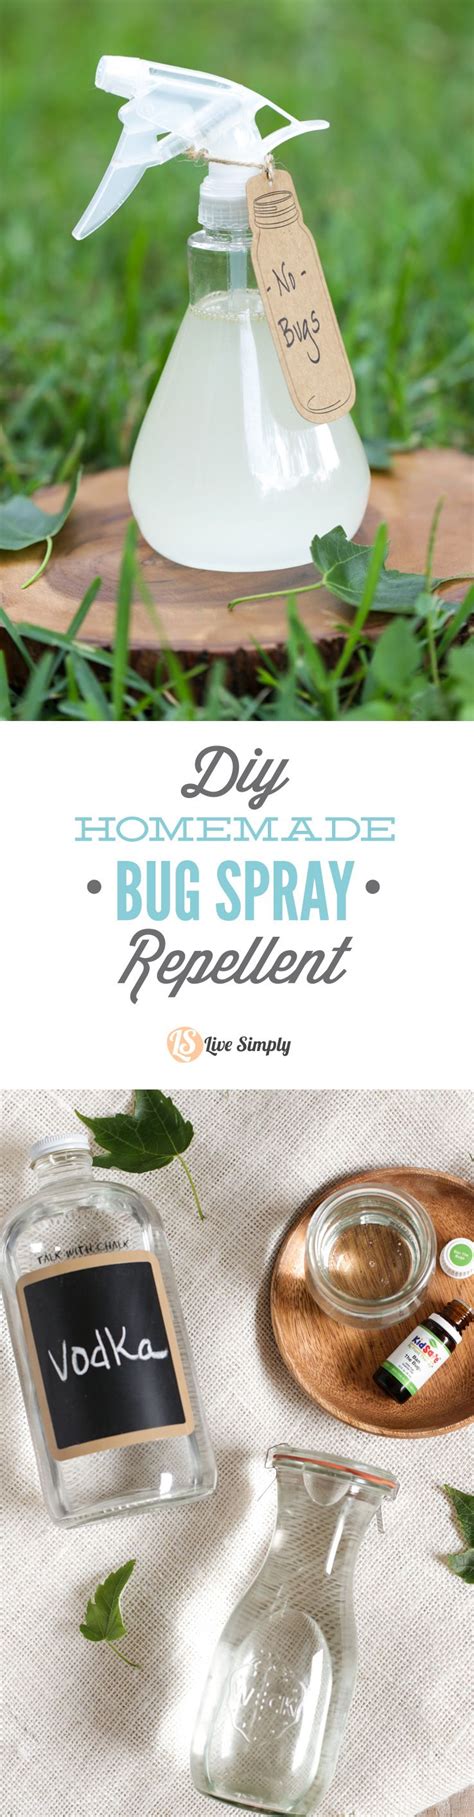 Homemade Bug Spray Mosquito Repellent Essential Oils Homemade Bug